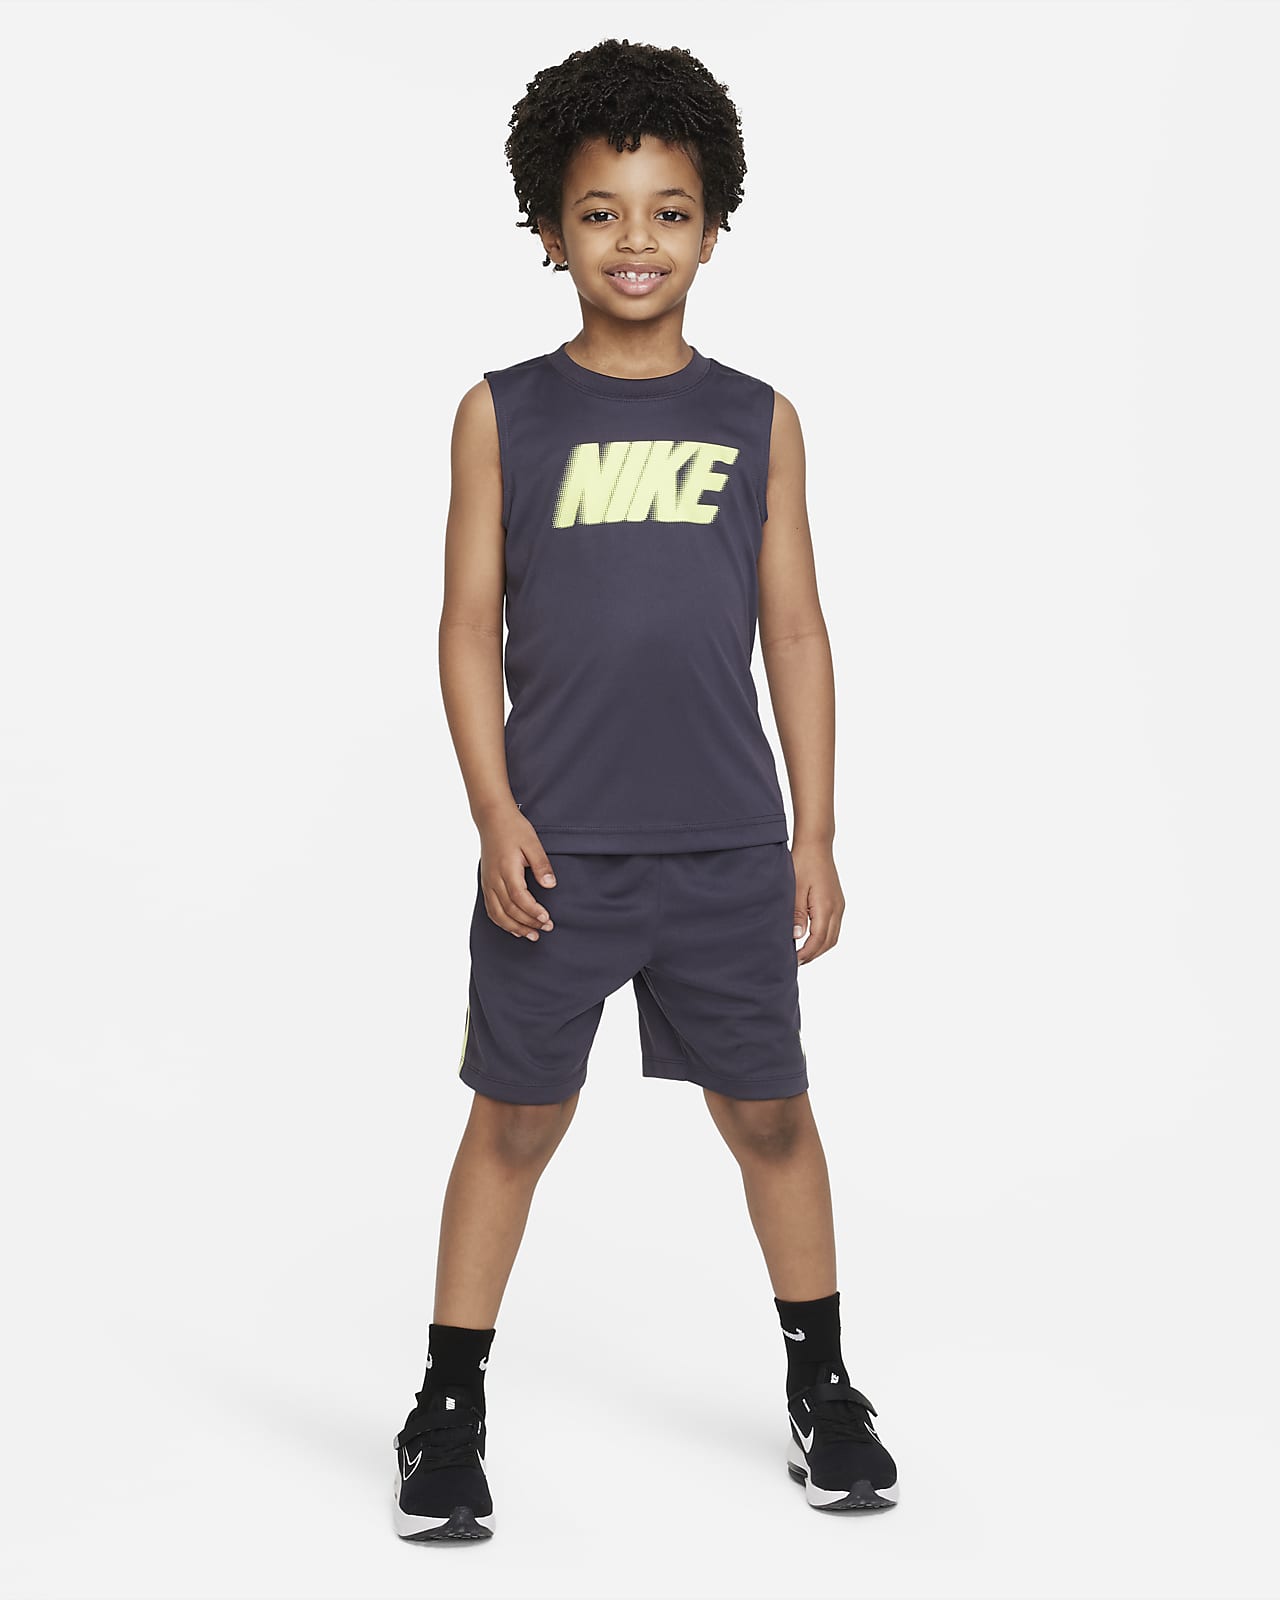 Nike All Day Play Dri-FIT Muscle Tee Little Kids' Dri-FIT Tank